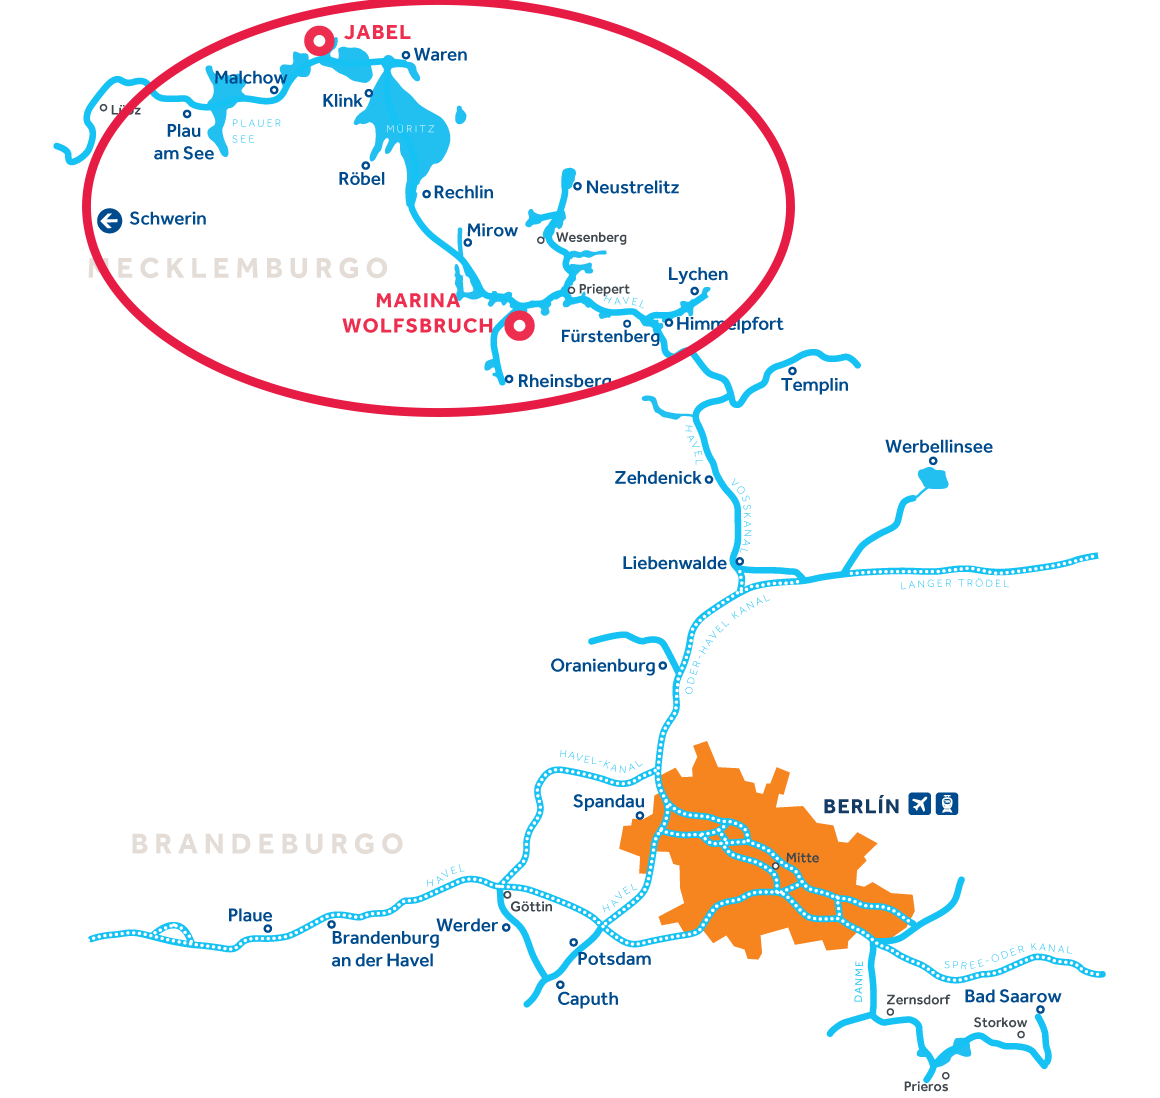 Mapa de la región de navegación de Mecklemburgo en Alemania